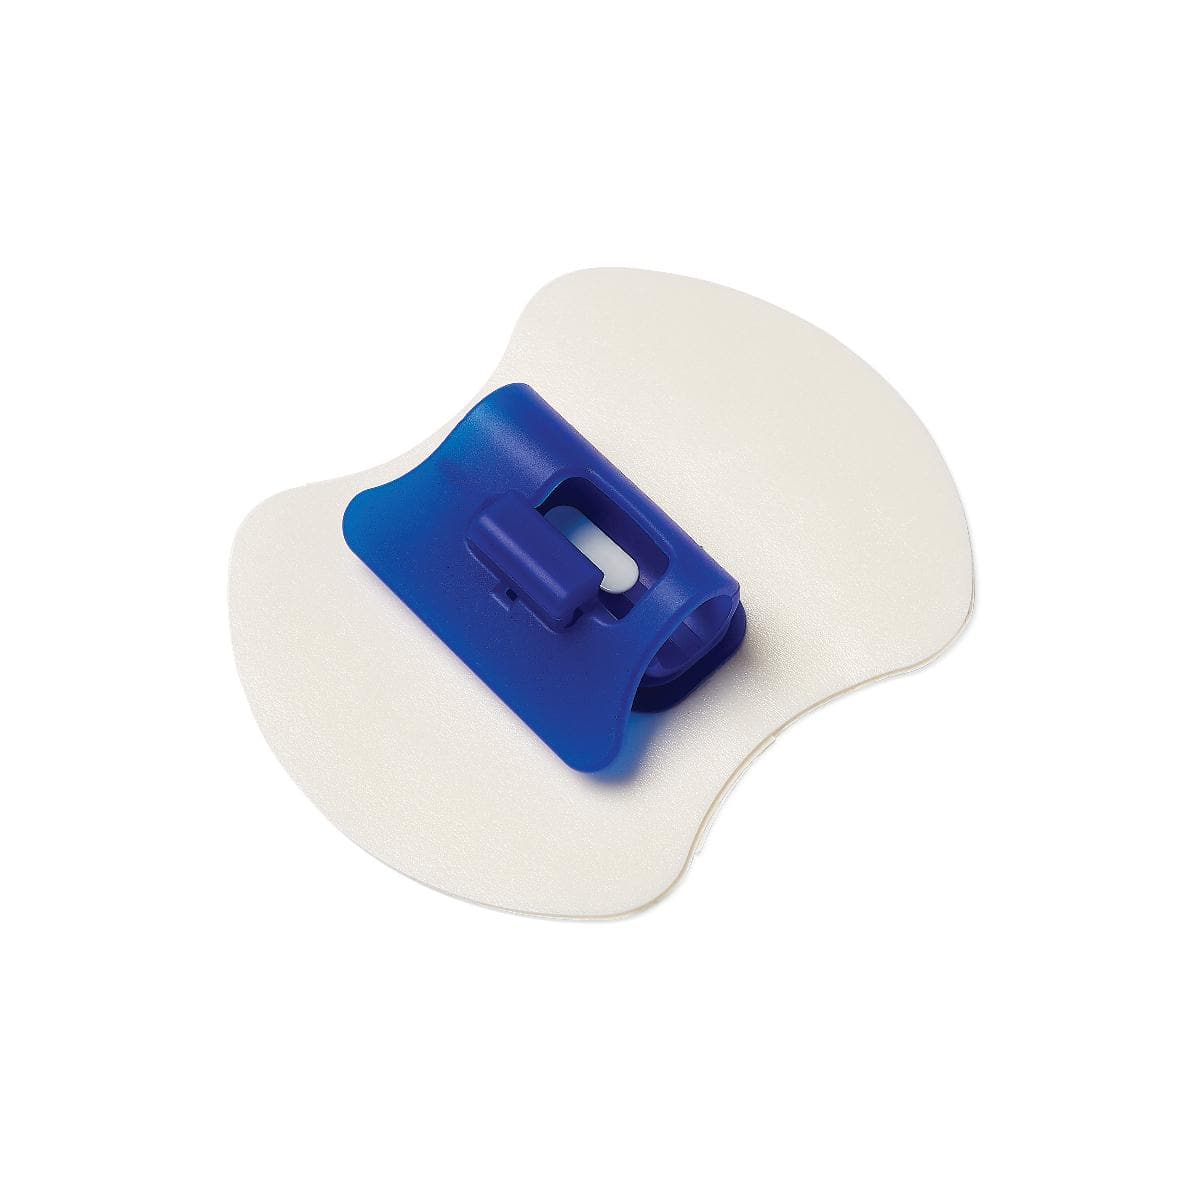 Medline Single Item Medline SafeSecure Foley Catheter Securement Device